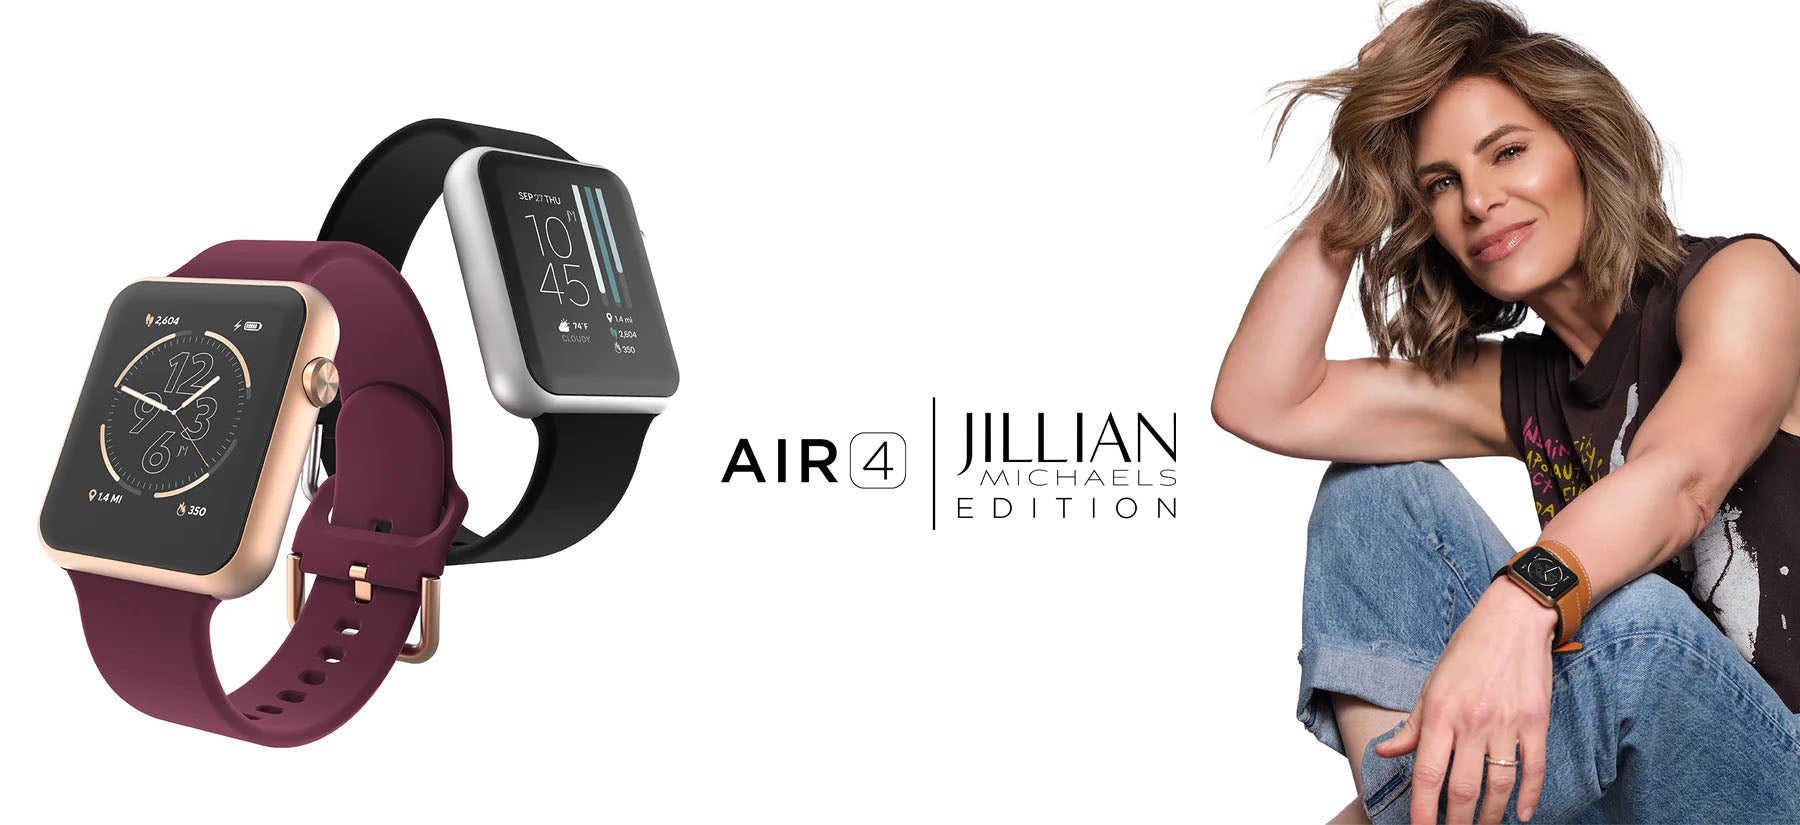 Jillian Michaels Edition iTouch Air 4